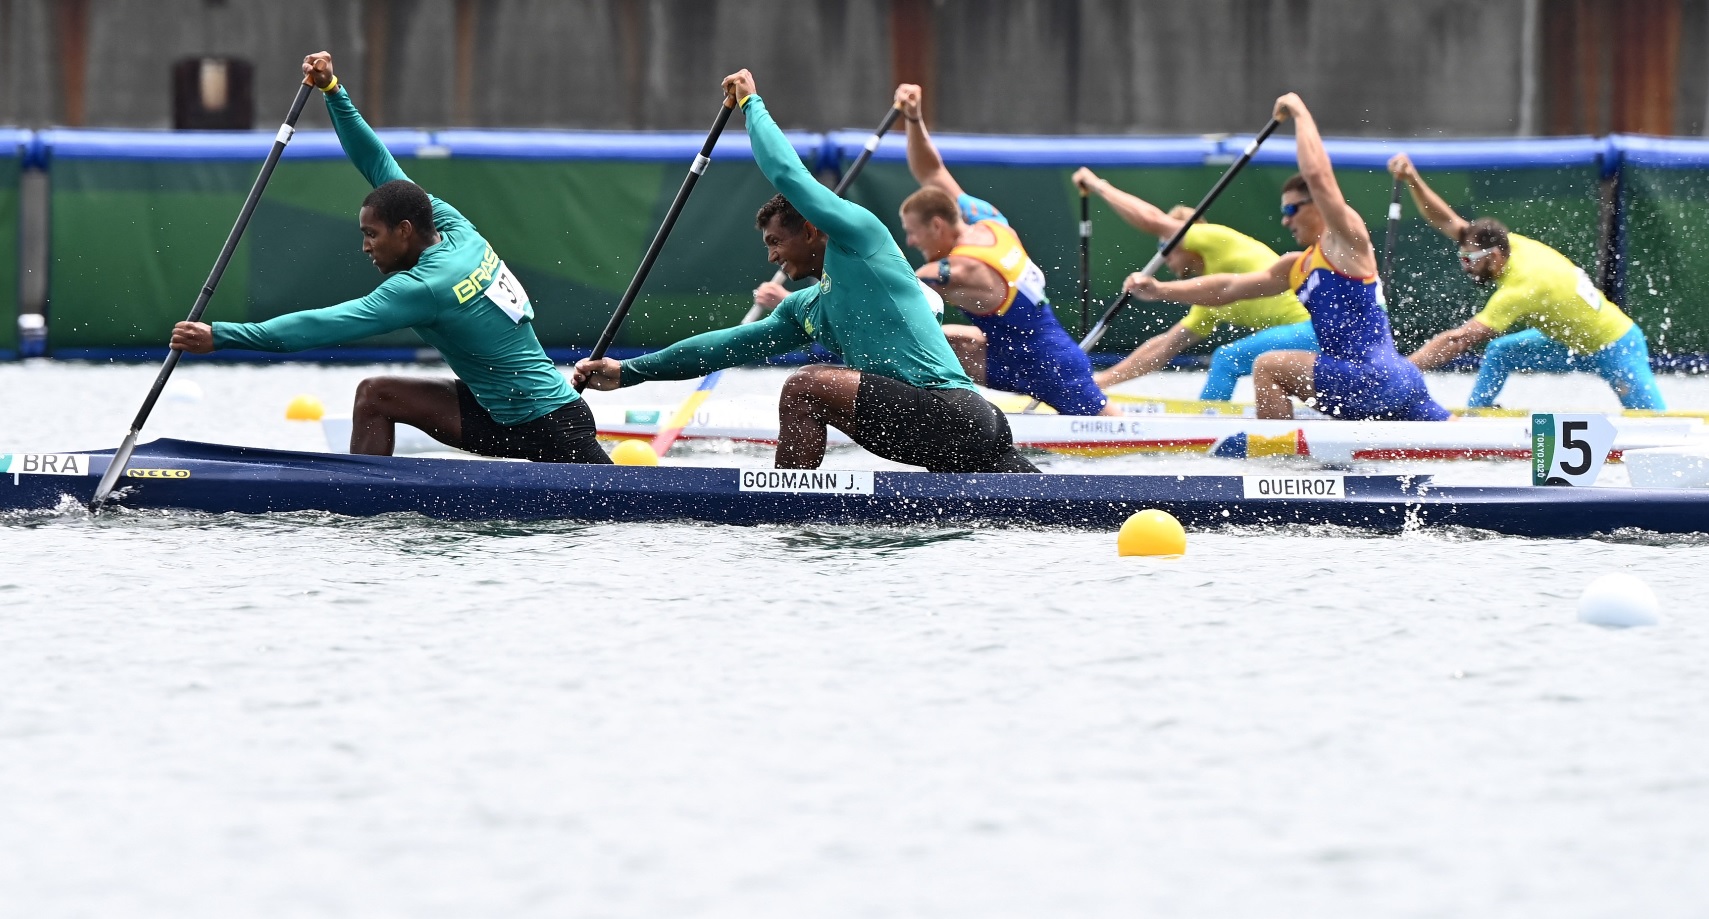 Jocurile Olimpice 2020 | Tragem pentru finală. Echipajul de canoe dublu s-a calificat în semifinale